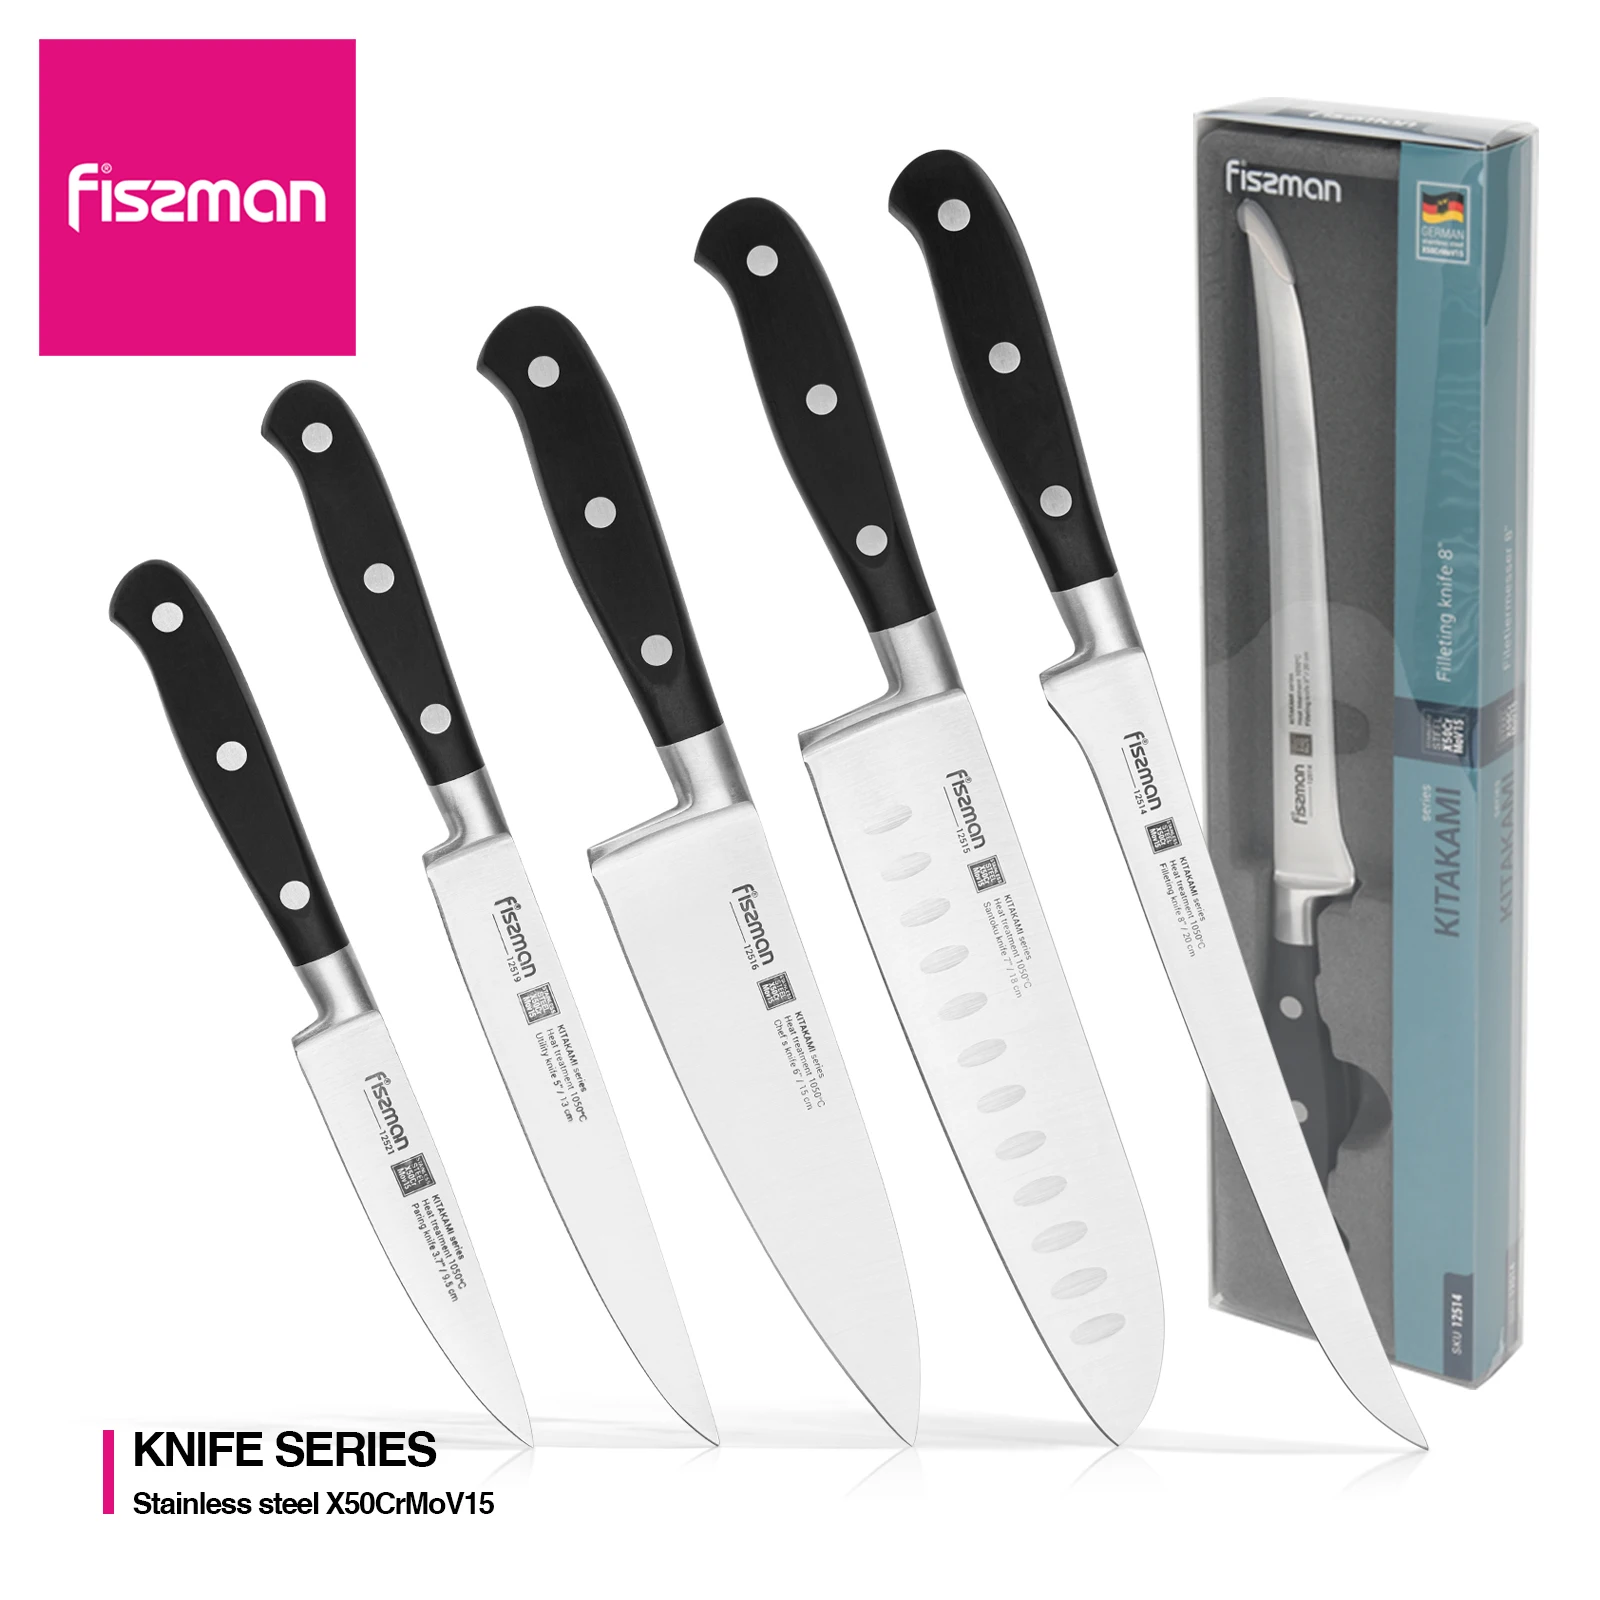 

Набор кухонных ножей Fissman, профессиональные поварские инструменты из немецкой высокоуглеродистой нержавеющей стали, приспособления для пр...